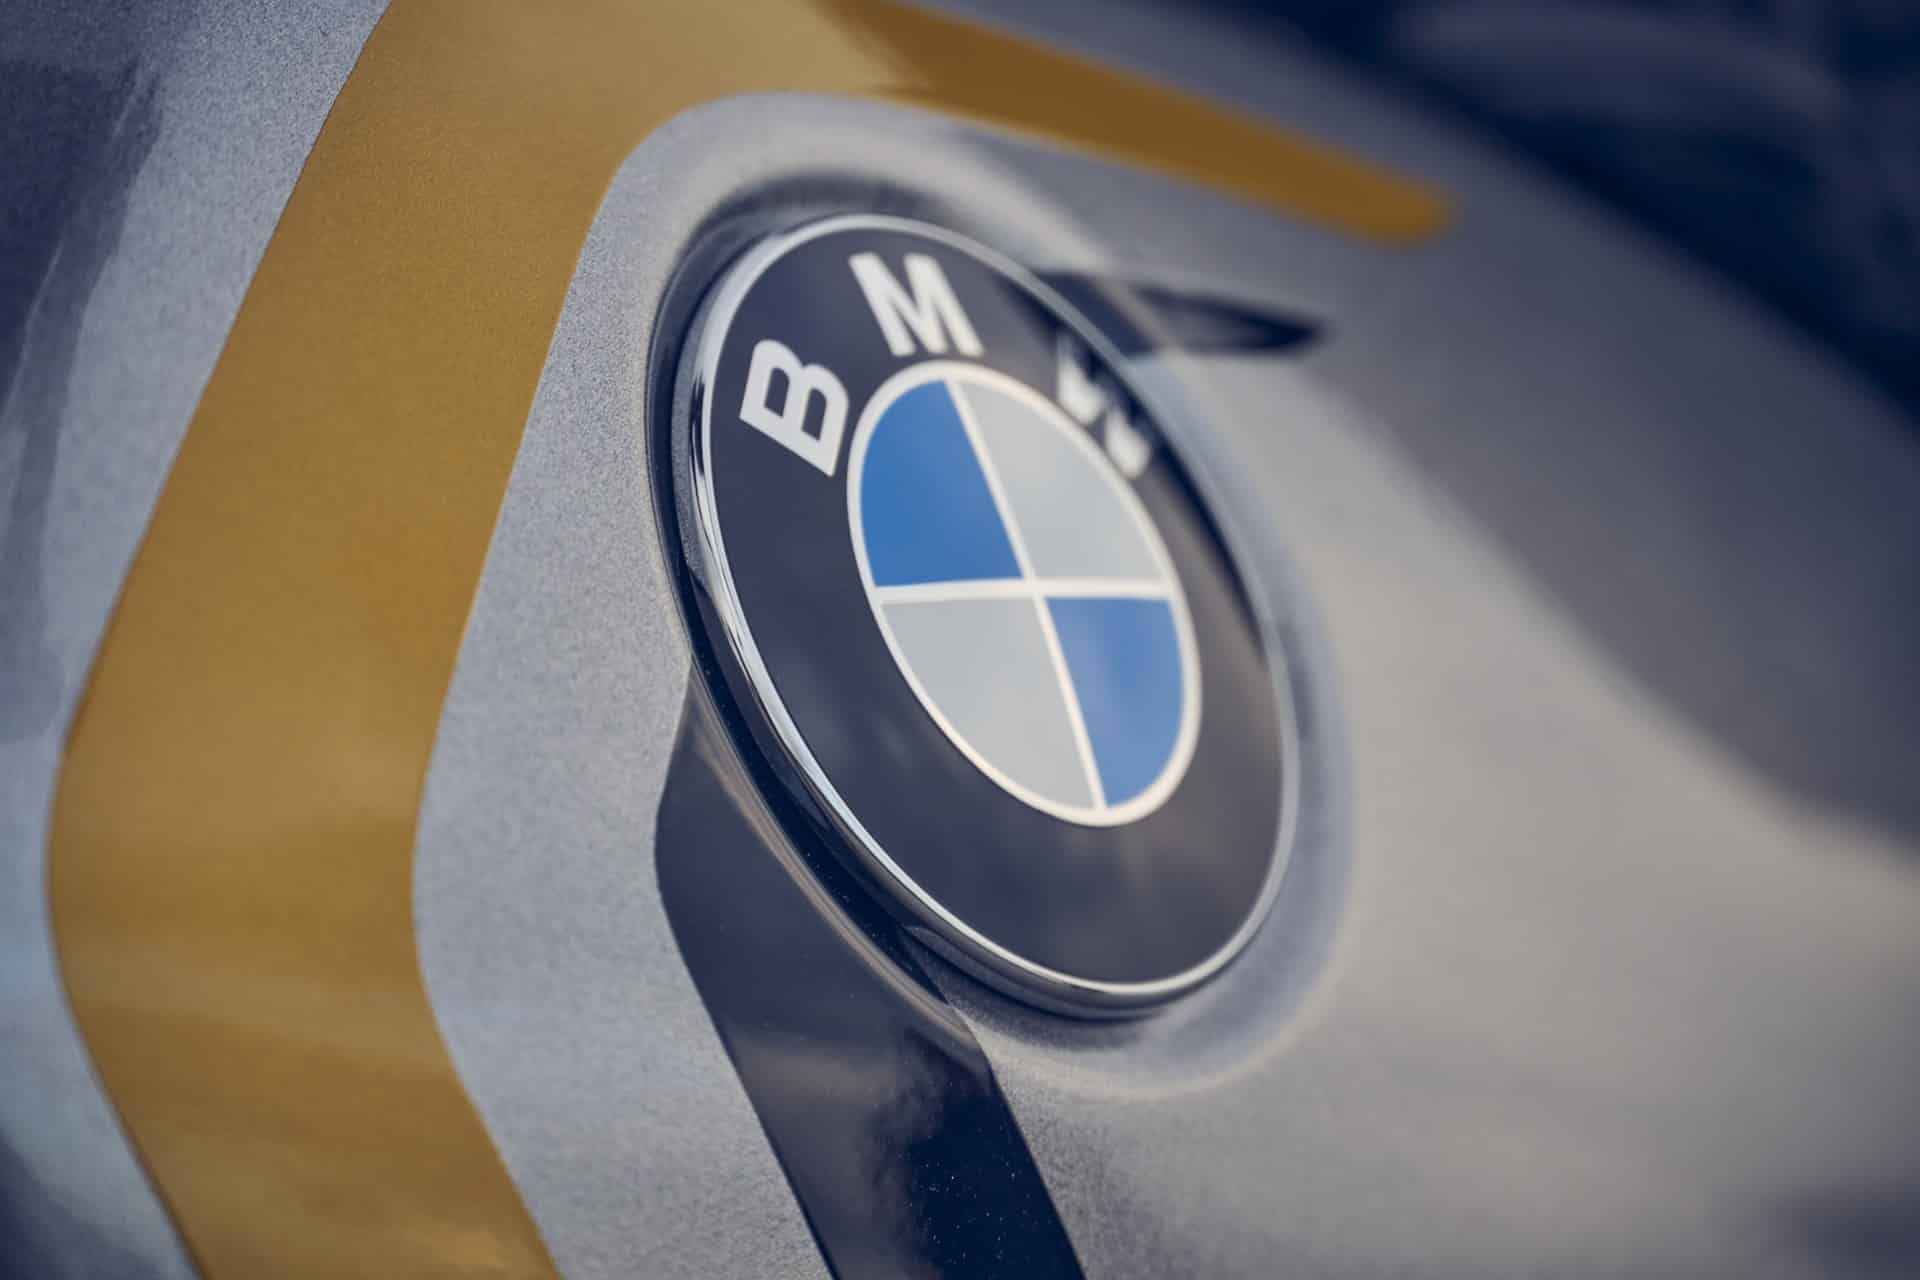 BMW R 12 nineT 2024